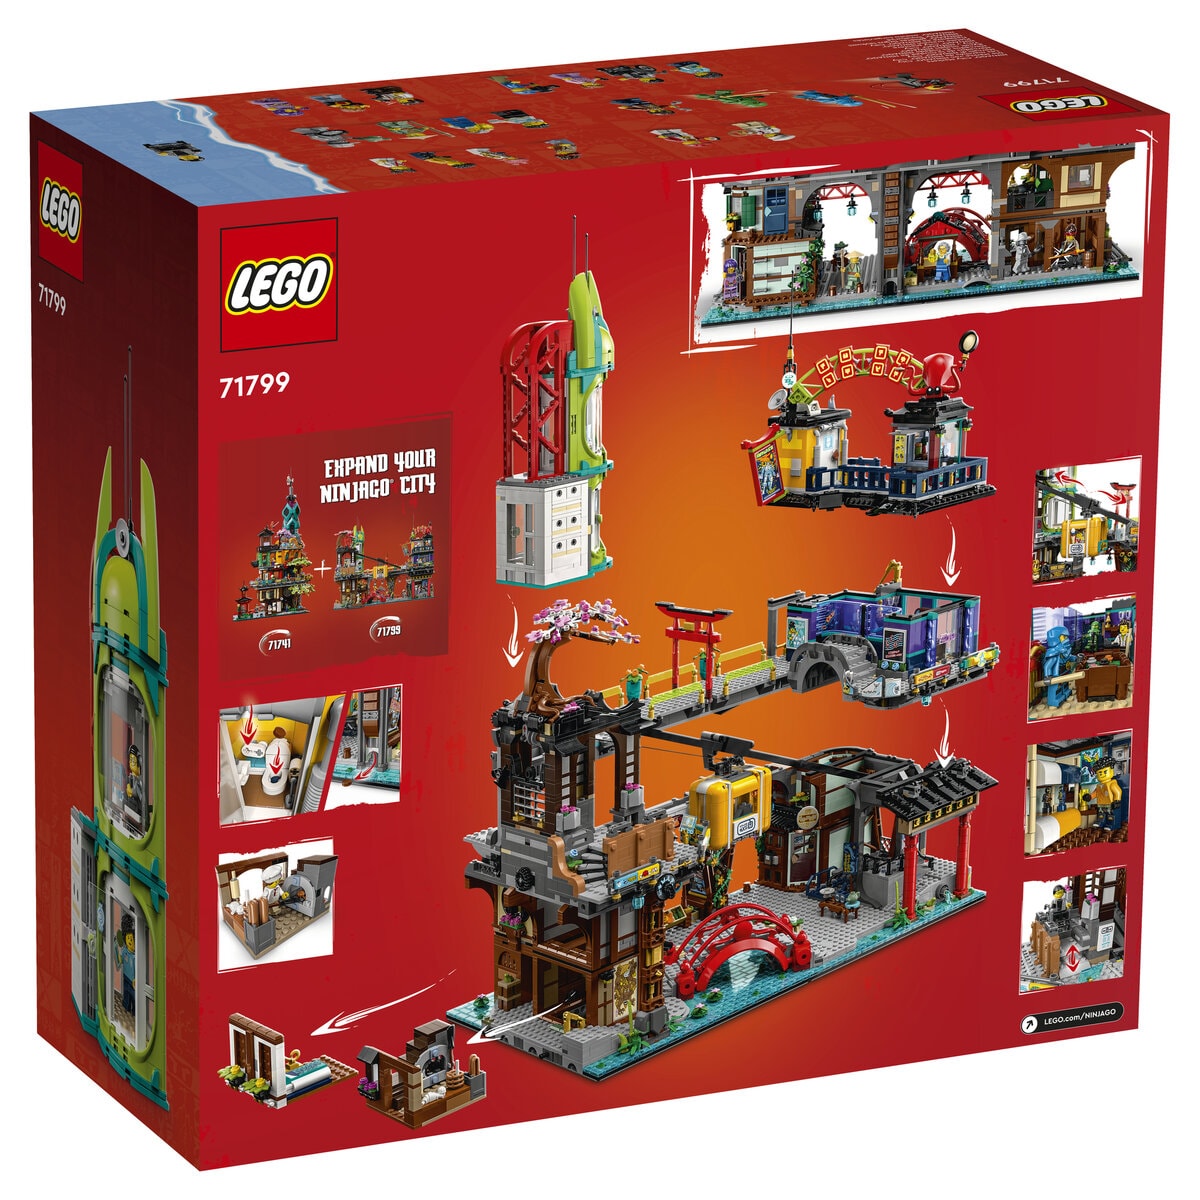 Nouveautés LEGO NINJAGO 2023 Dragons Rising : les nouveaux sets